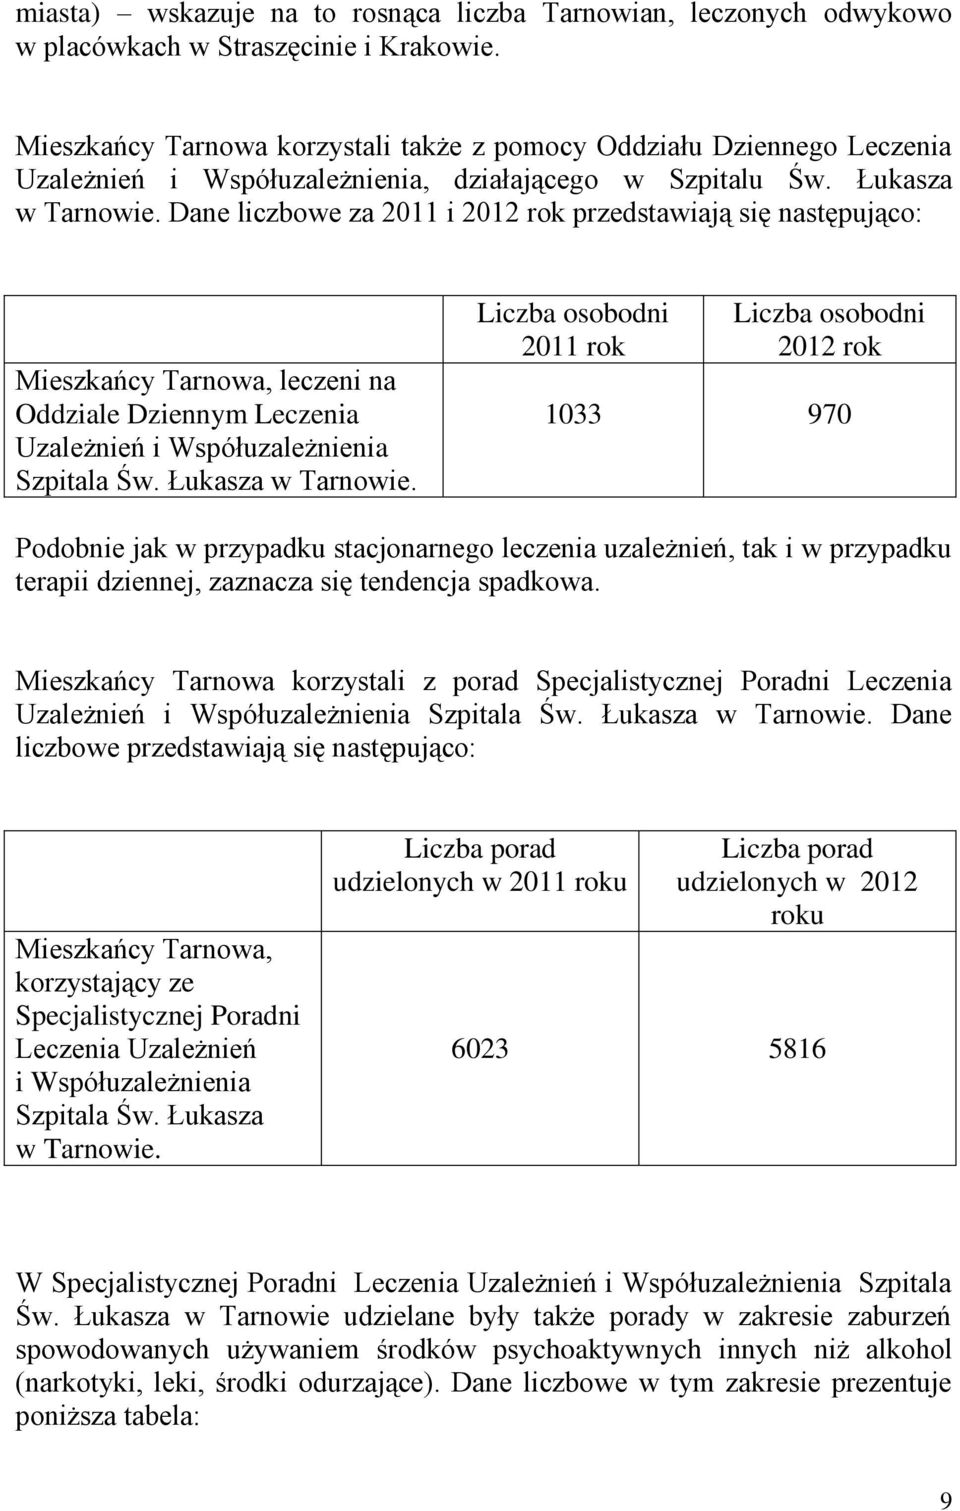 Dane liczbowe za 2011 i 2012 rok przedstawiają się następująco: Mieszkańcy Tarnowa, leczeni na Oddziale Dziennym Leczenia Uzależnień i Współuzależnienia Szpitala Św. Łukasza w Tarnowie.